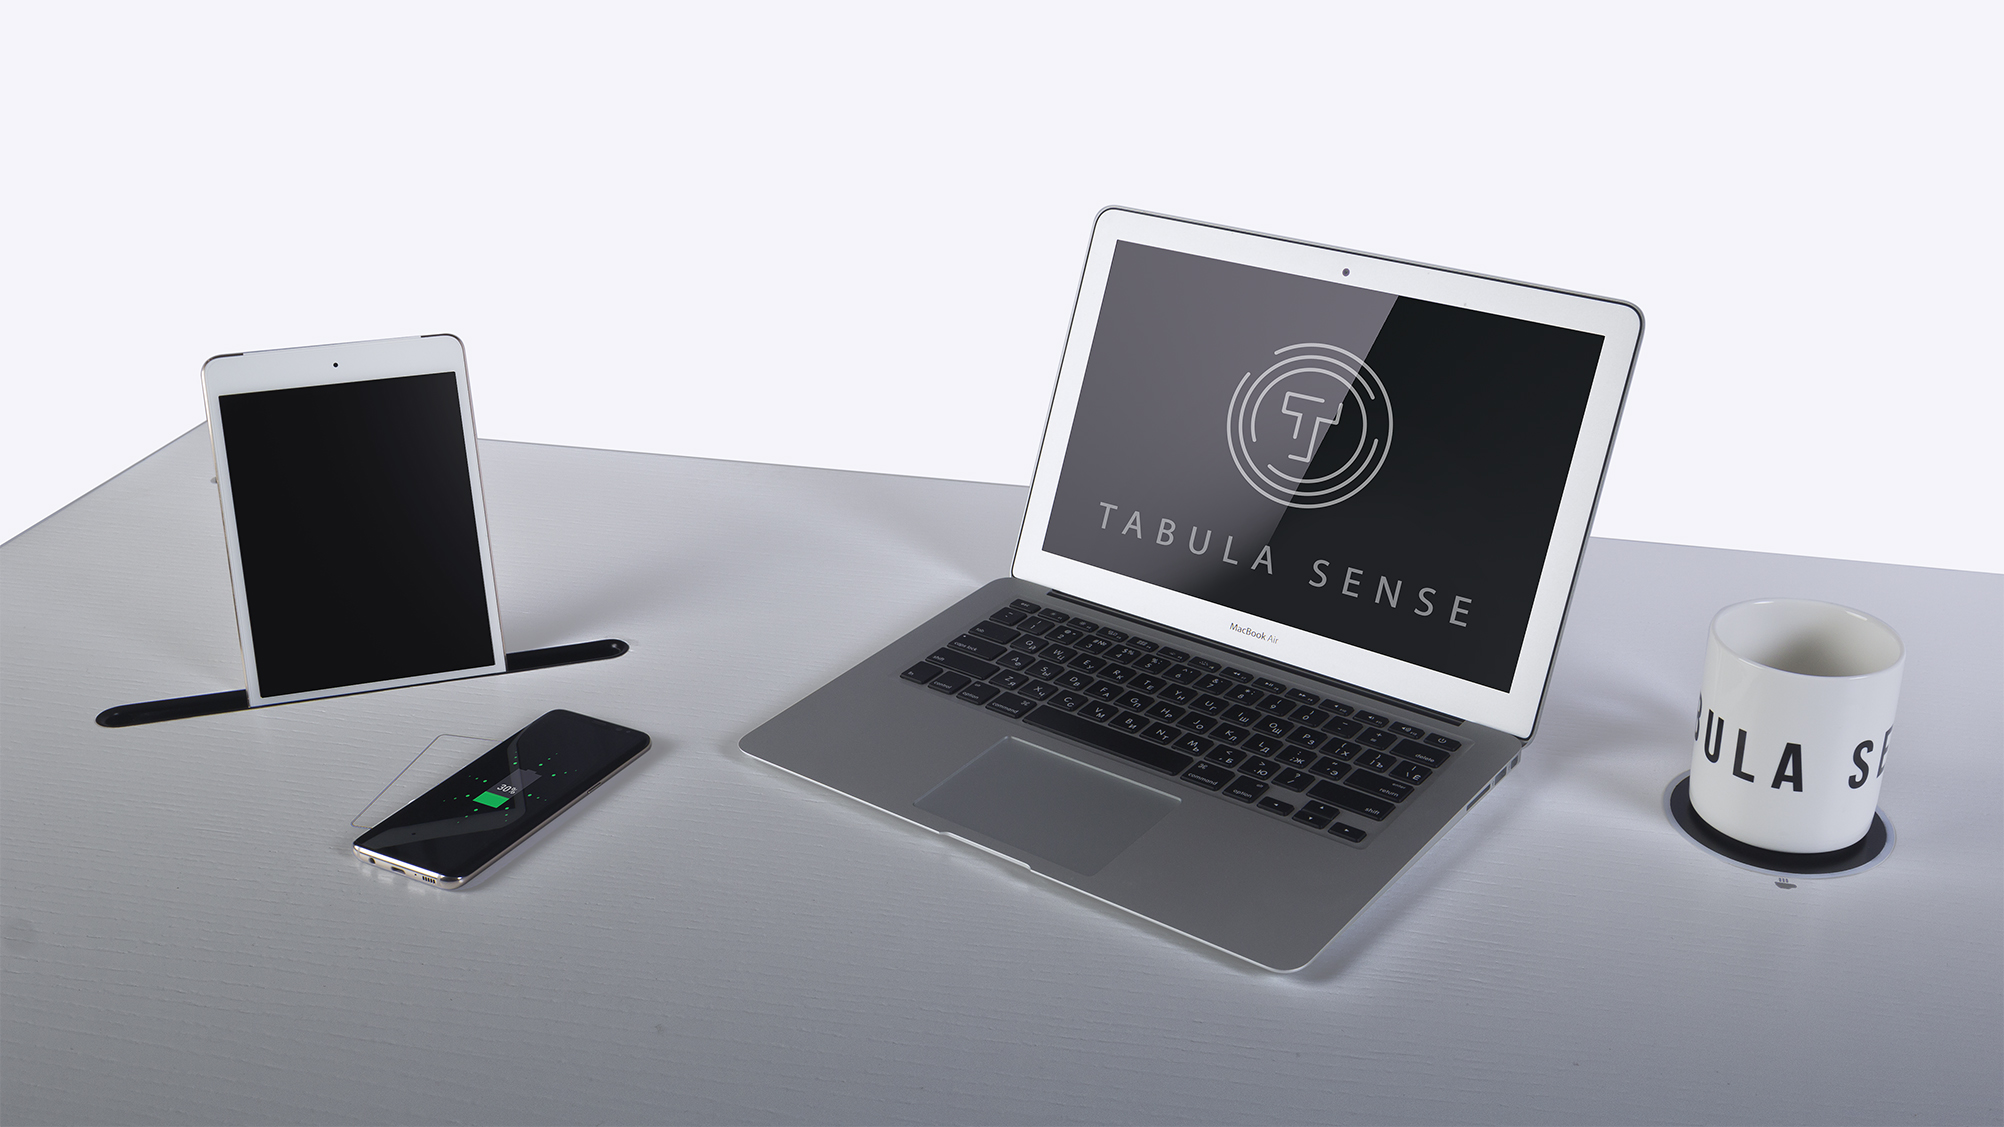  tabula sense smart desk black edition с регулировкой высоты